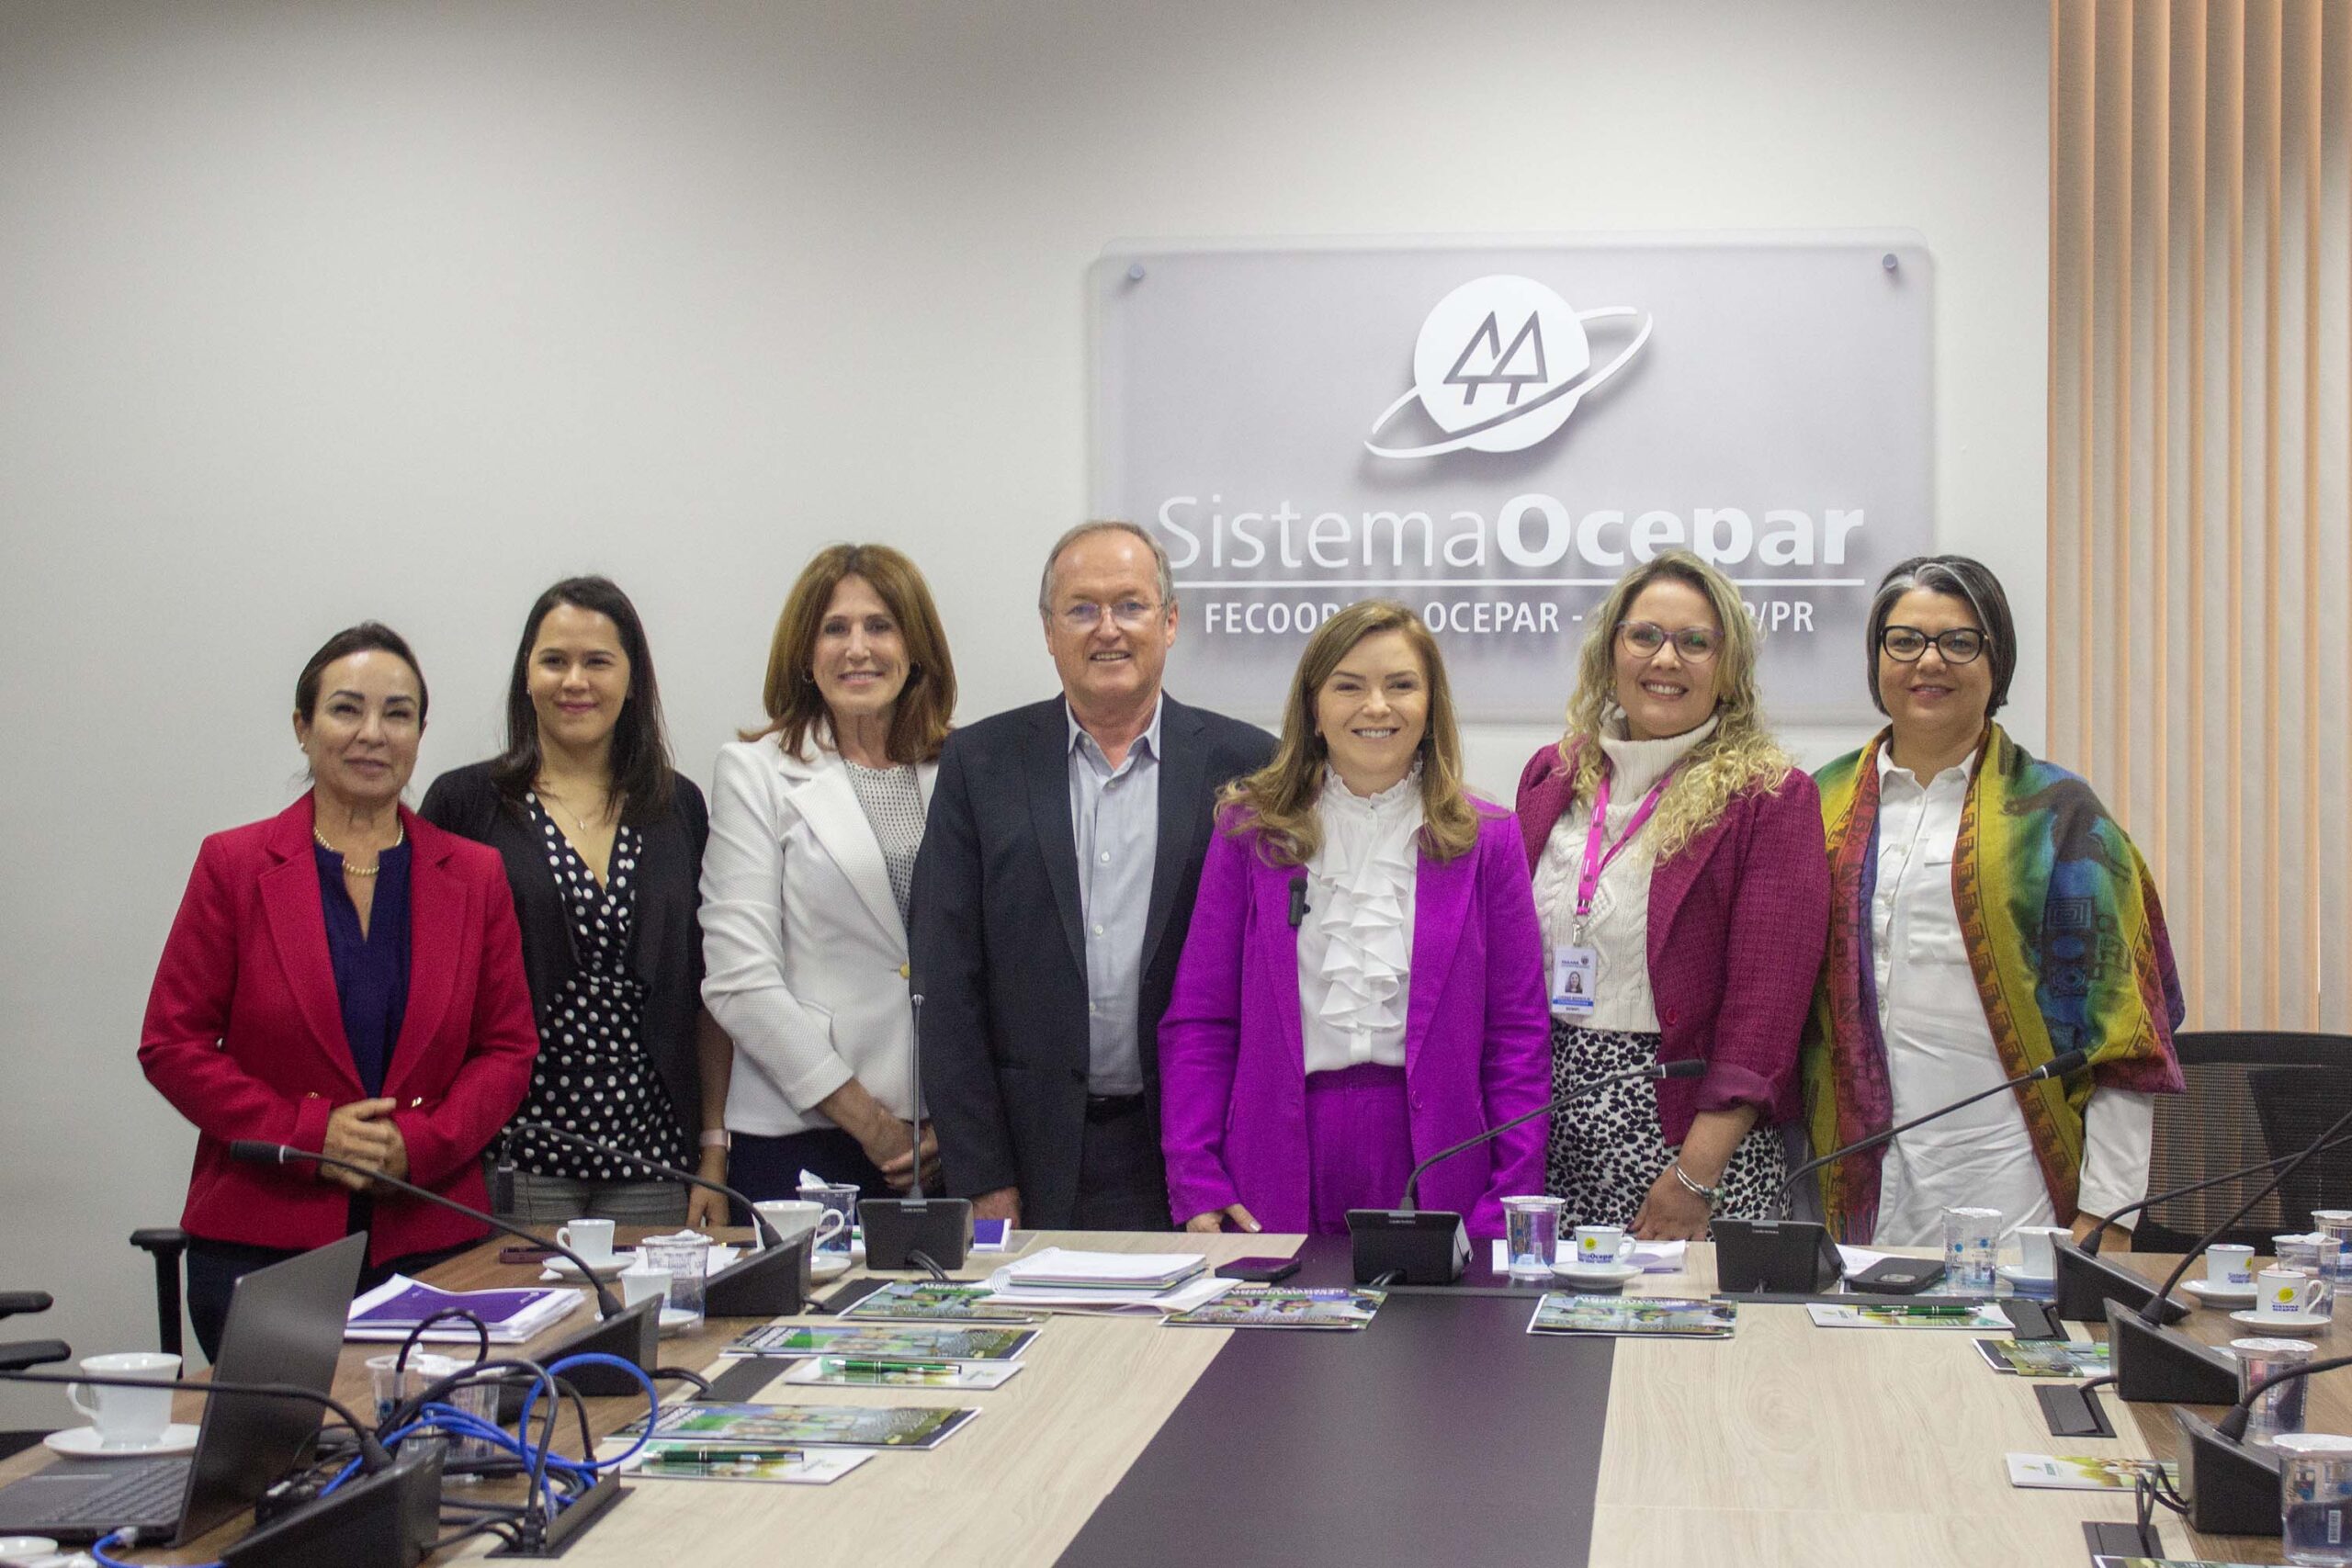 Paraná firma parceria com Ocepar para fomentar o cooperativismo feminino